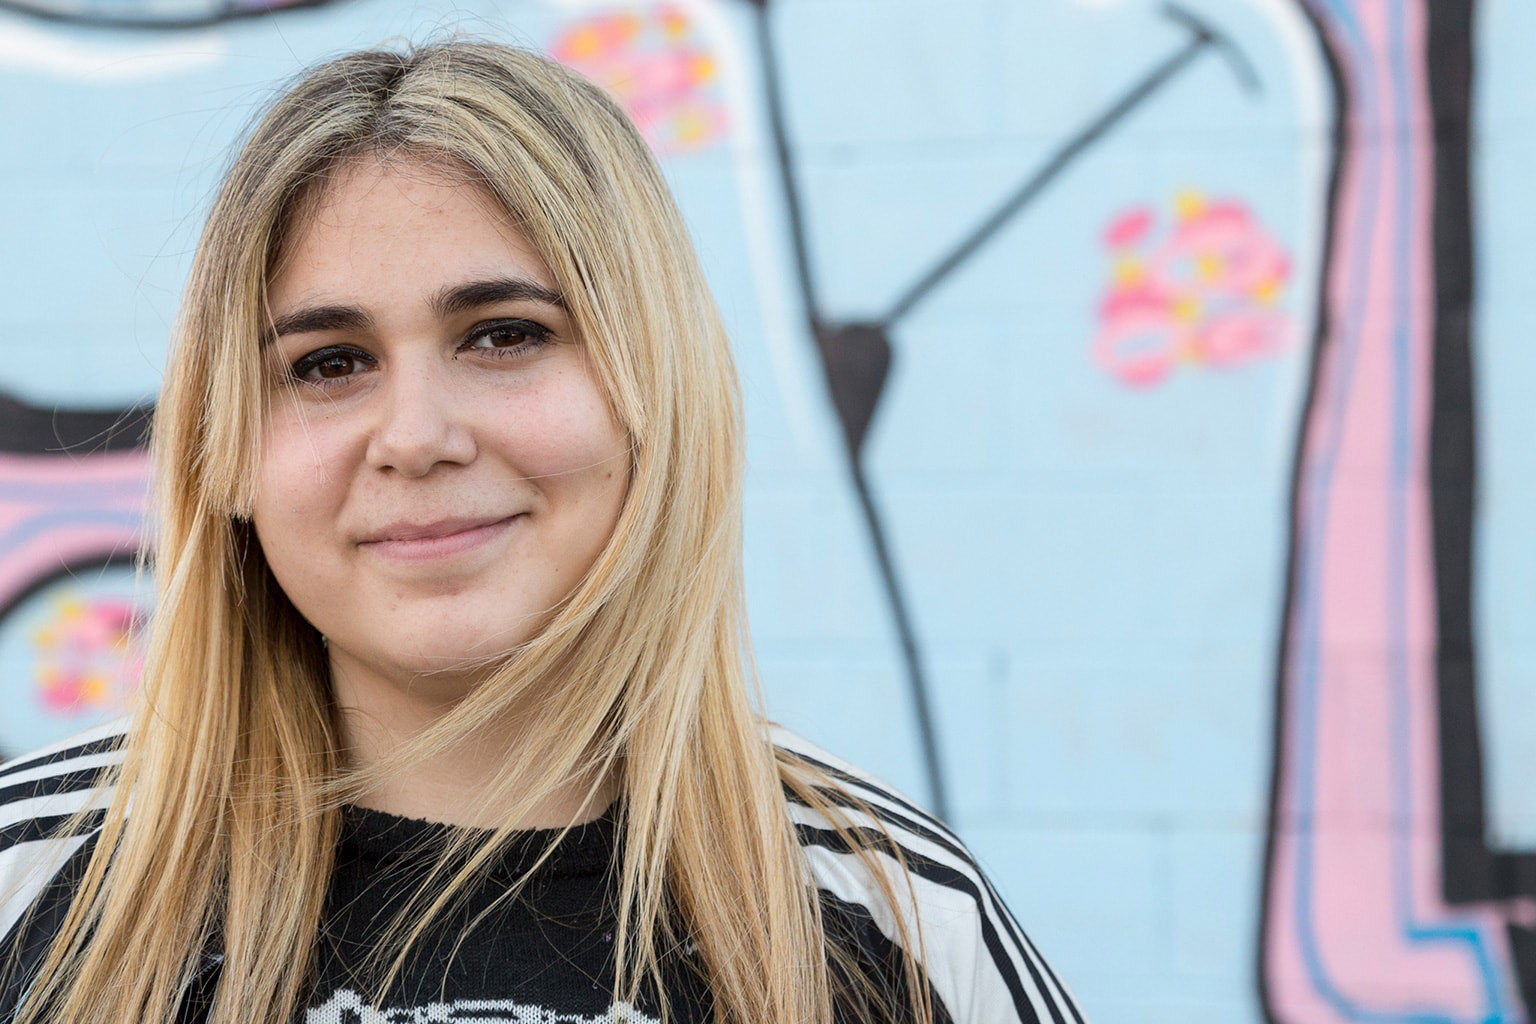 Brenda Sofia 19 años de la ciudad de quilmes, <br> es estudiante de abogacía, pinta o grafitea hace 4 años<br>simplemente porque es su cable a tierra.